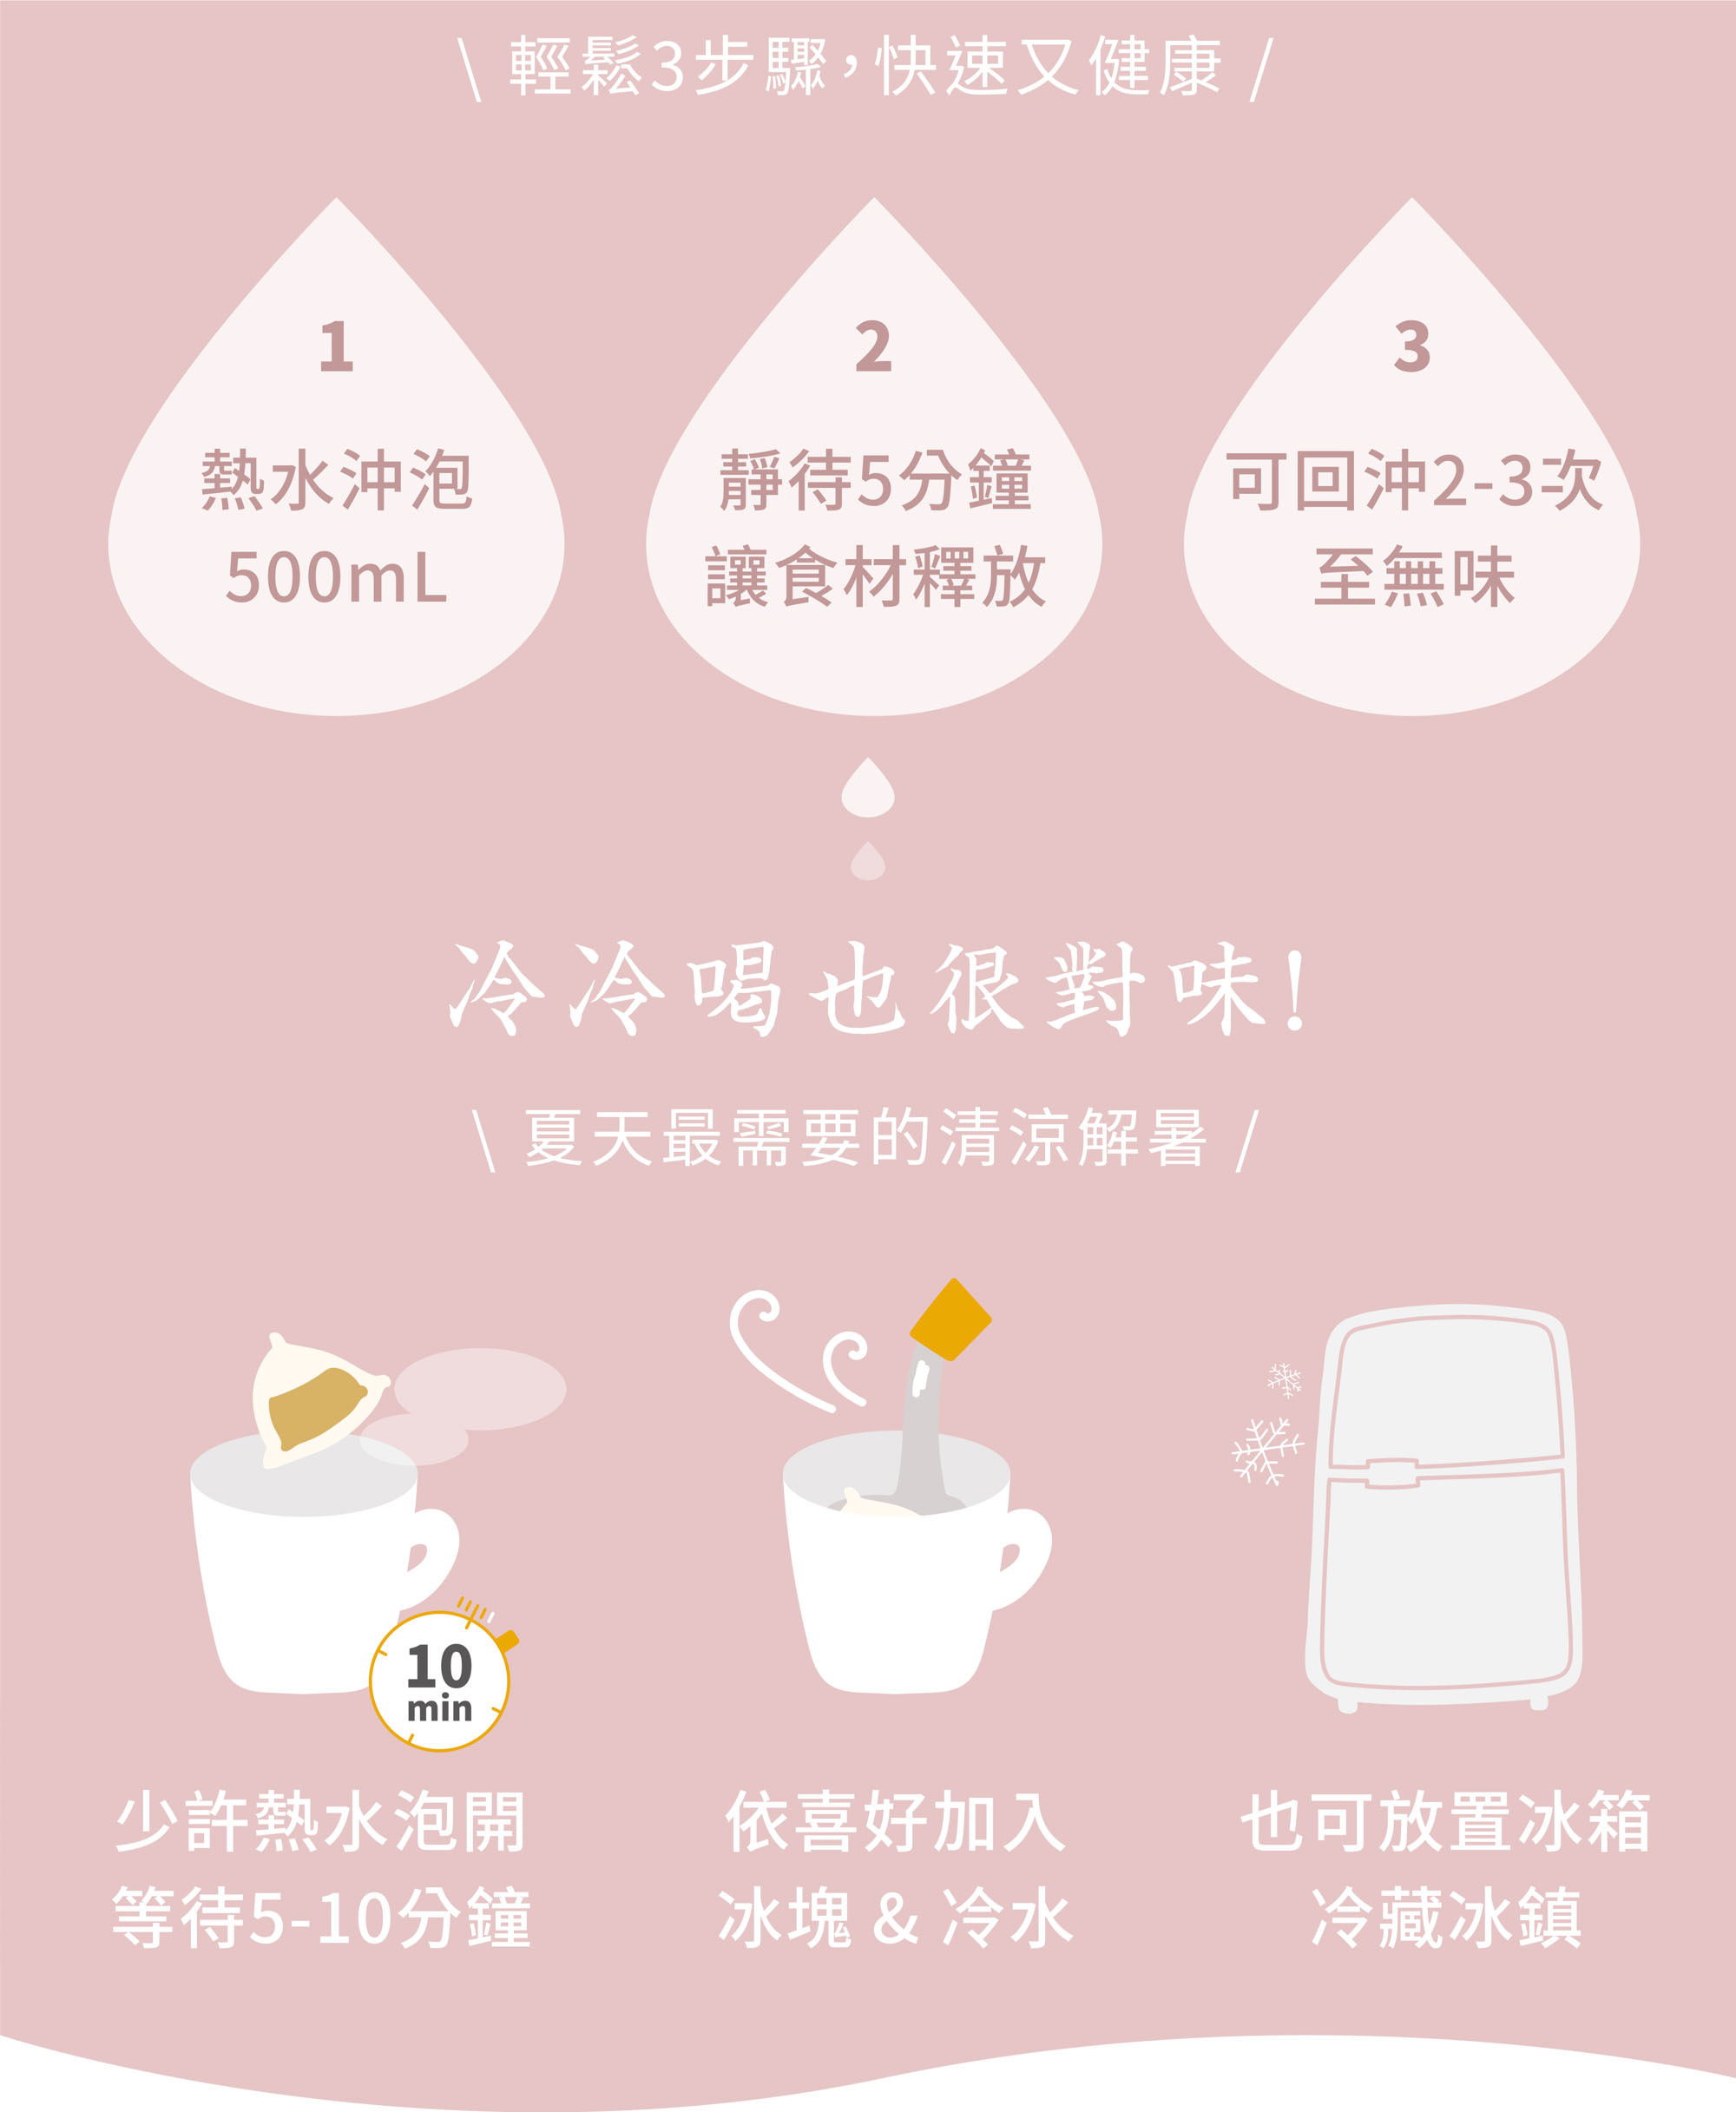 新譯漢方潤顏粉光蔘茶沖泡方式